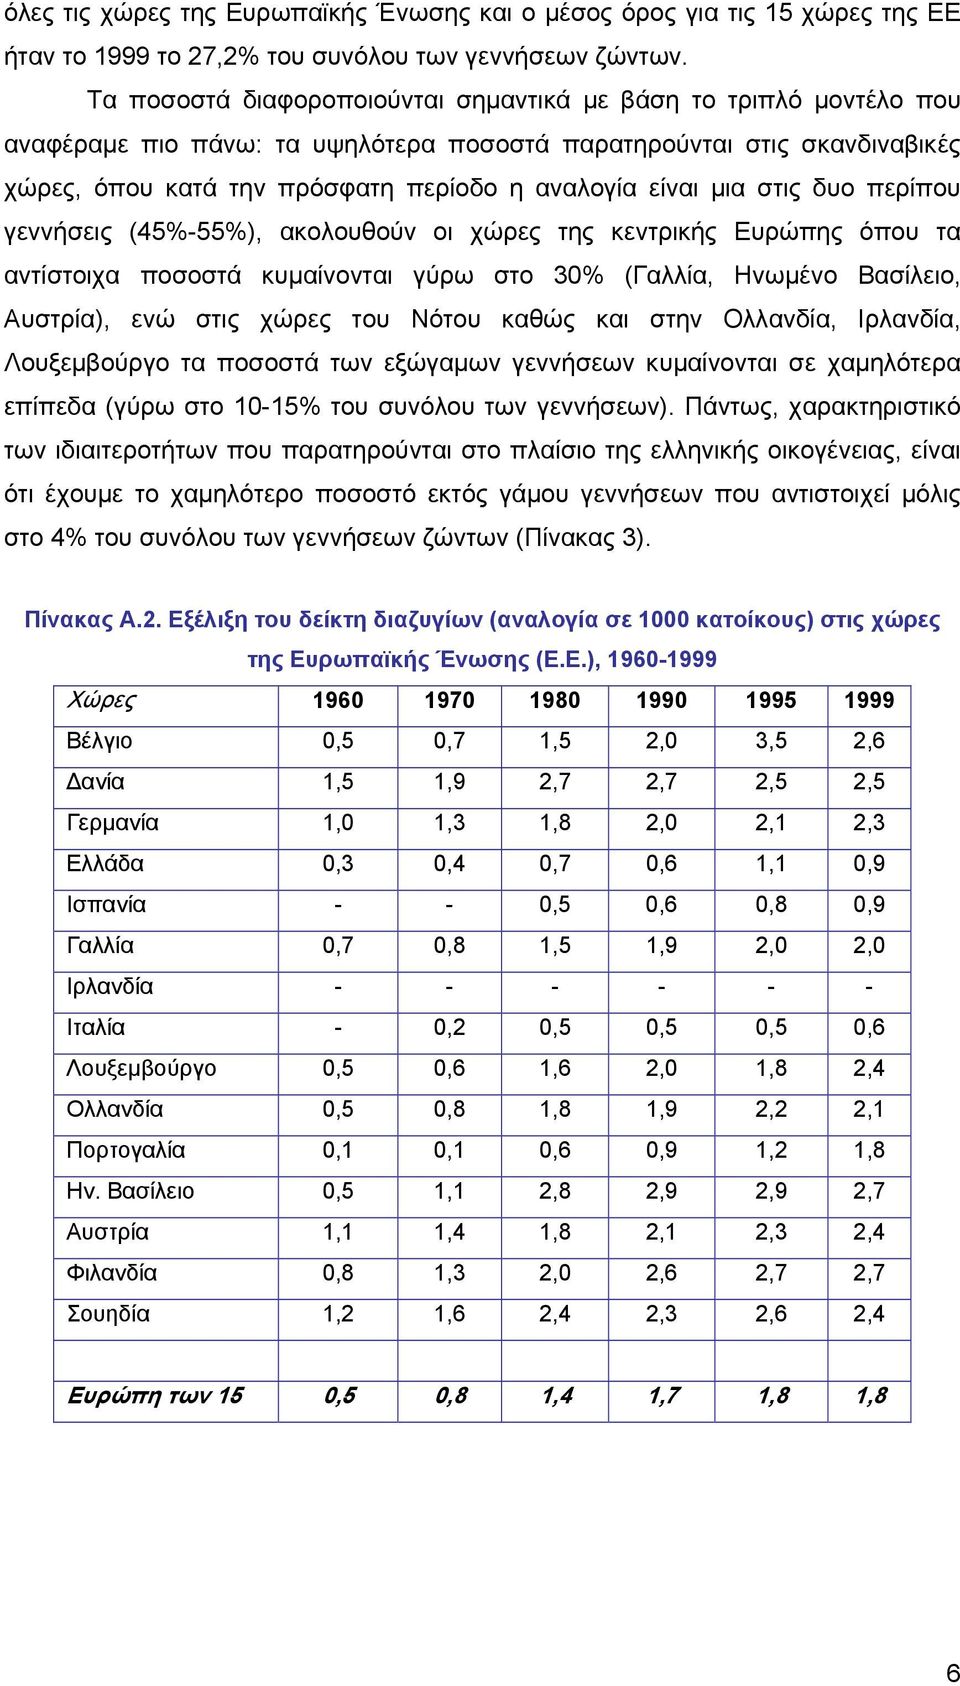 μια στις δυο περίπου γεννήσεις (45%-55%), ακολουθούν οι χώρες της κεντρικής Ευρώπης όπου τα αντίστοιχα ποσοστά κυμαίνονται γύρω στο 30% (Γαλλία, Ηνωμένο Βασίλειο, Αυστρία), ενώ στις χώρες του Νότου